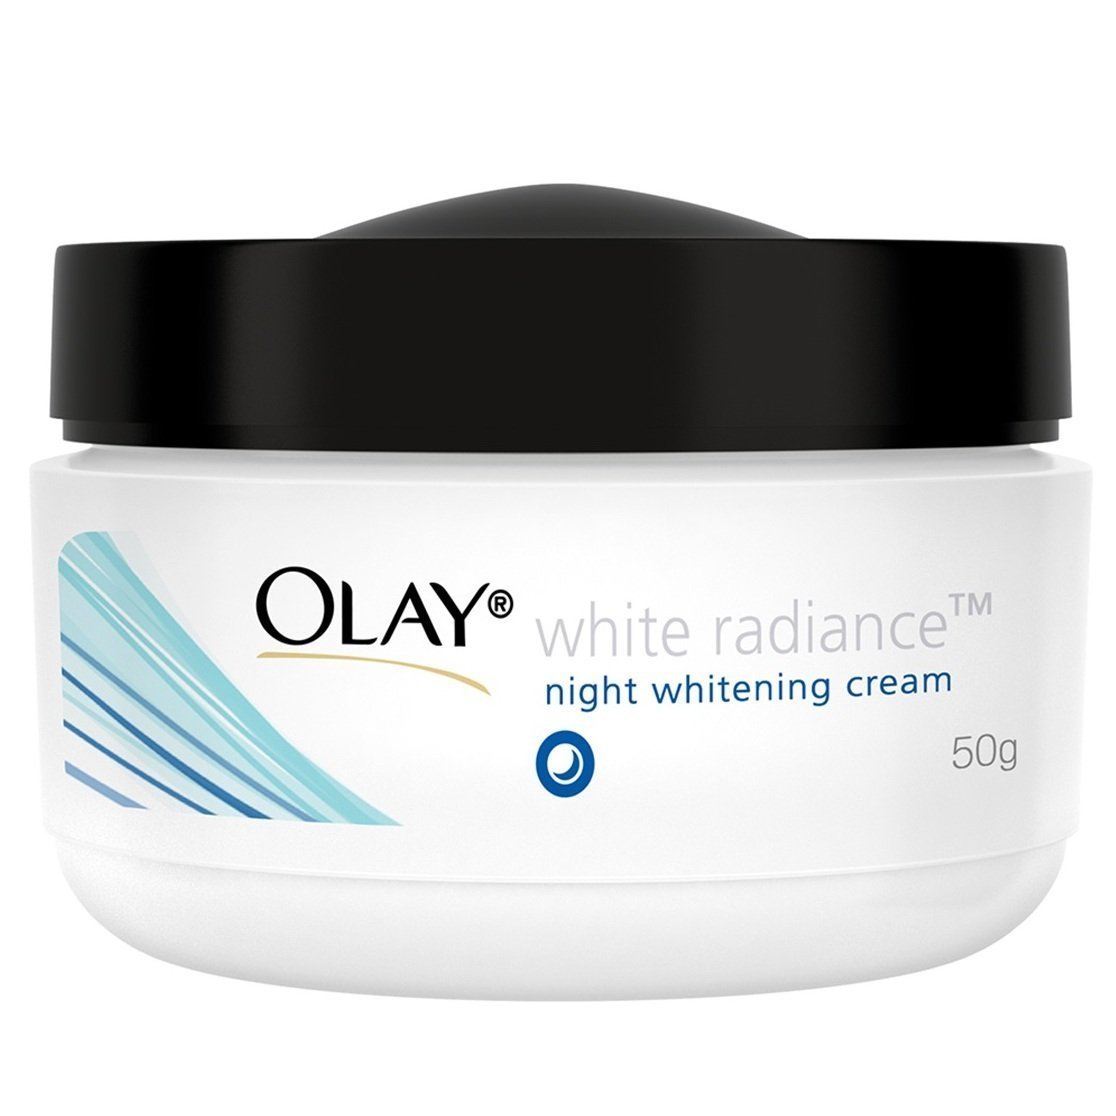 olay whitening night cream review